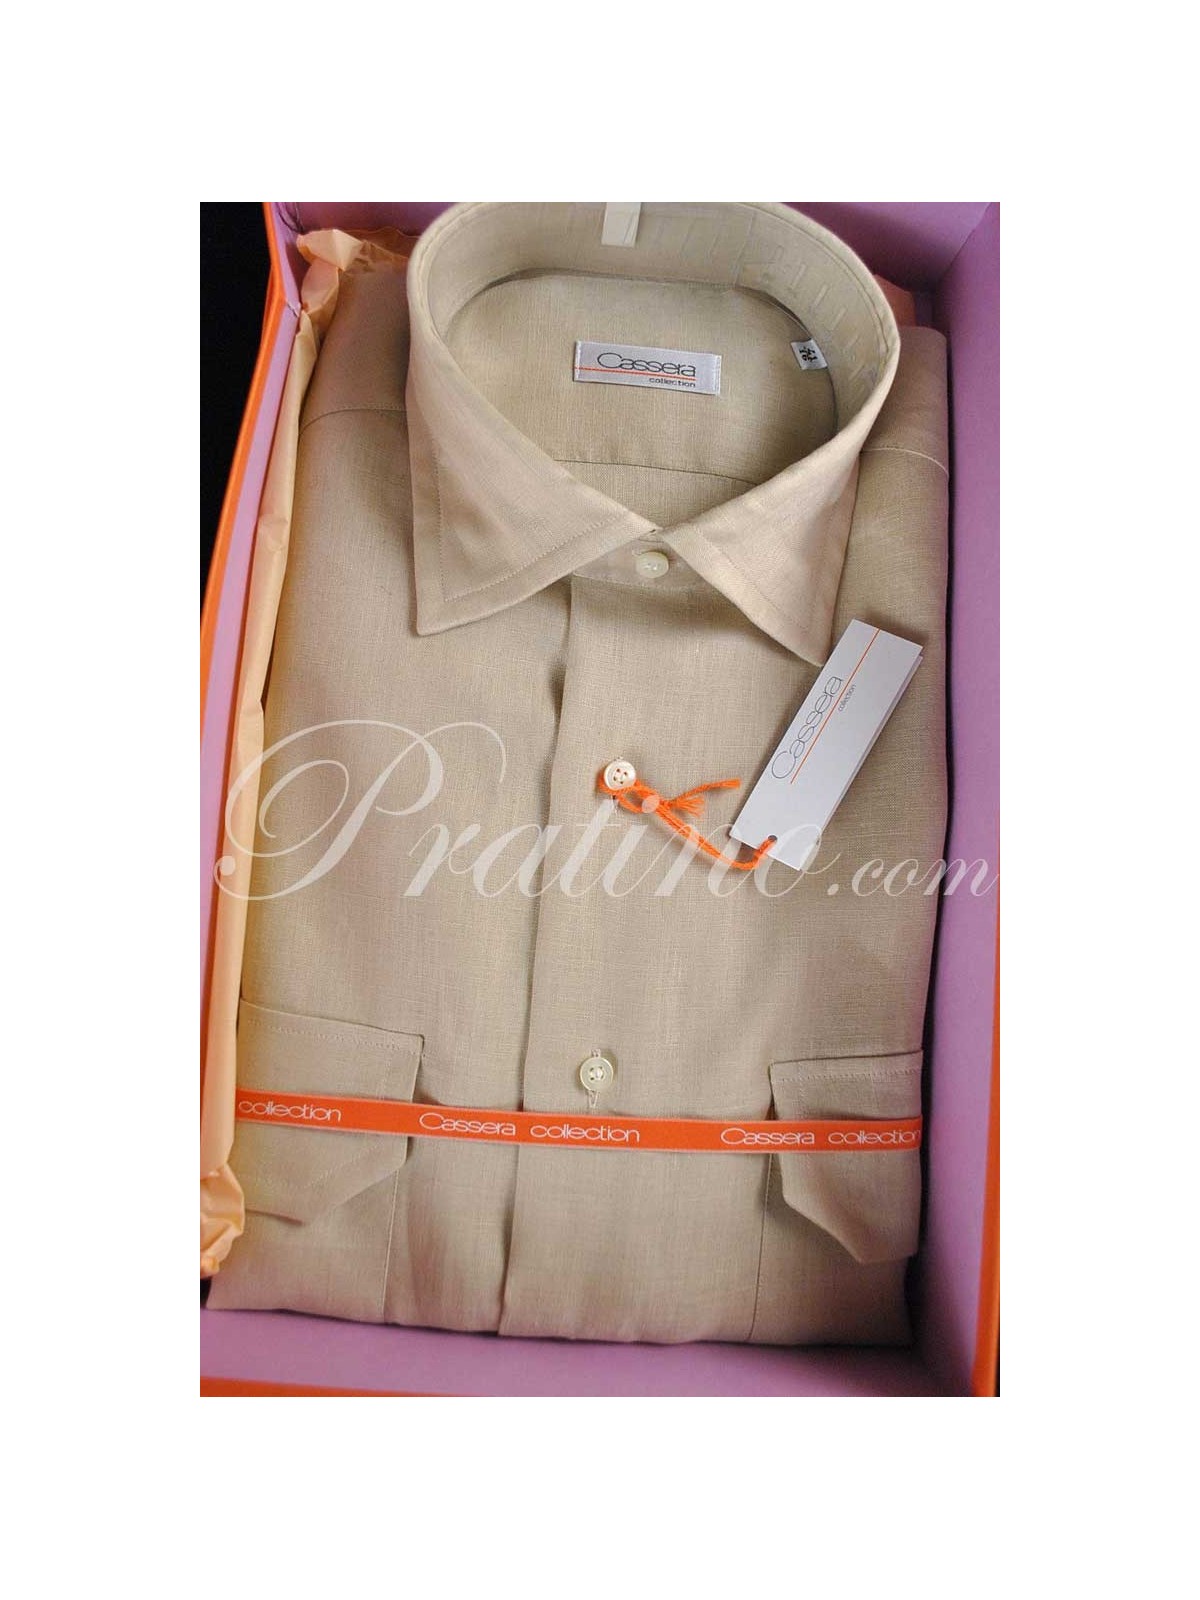 CASSERA French Man Shirt 16 41 Pure Beige Linen